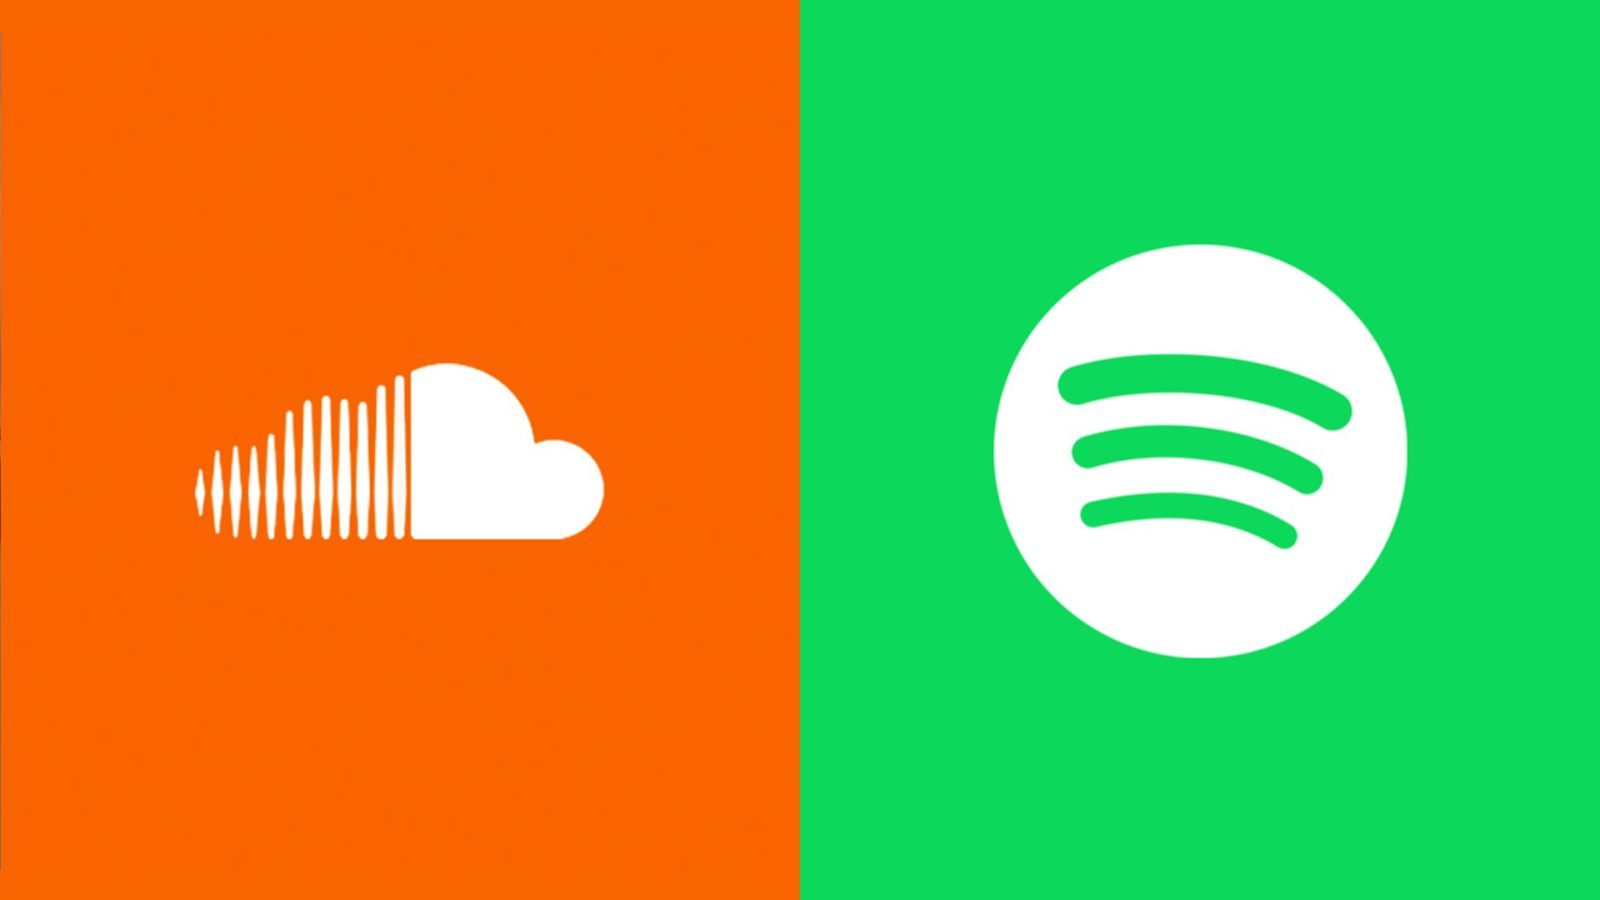 Soundcloud Spotify Wallpaper And Spotify HD Wallpaper